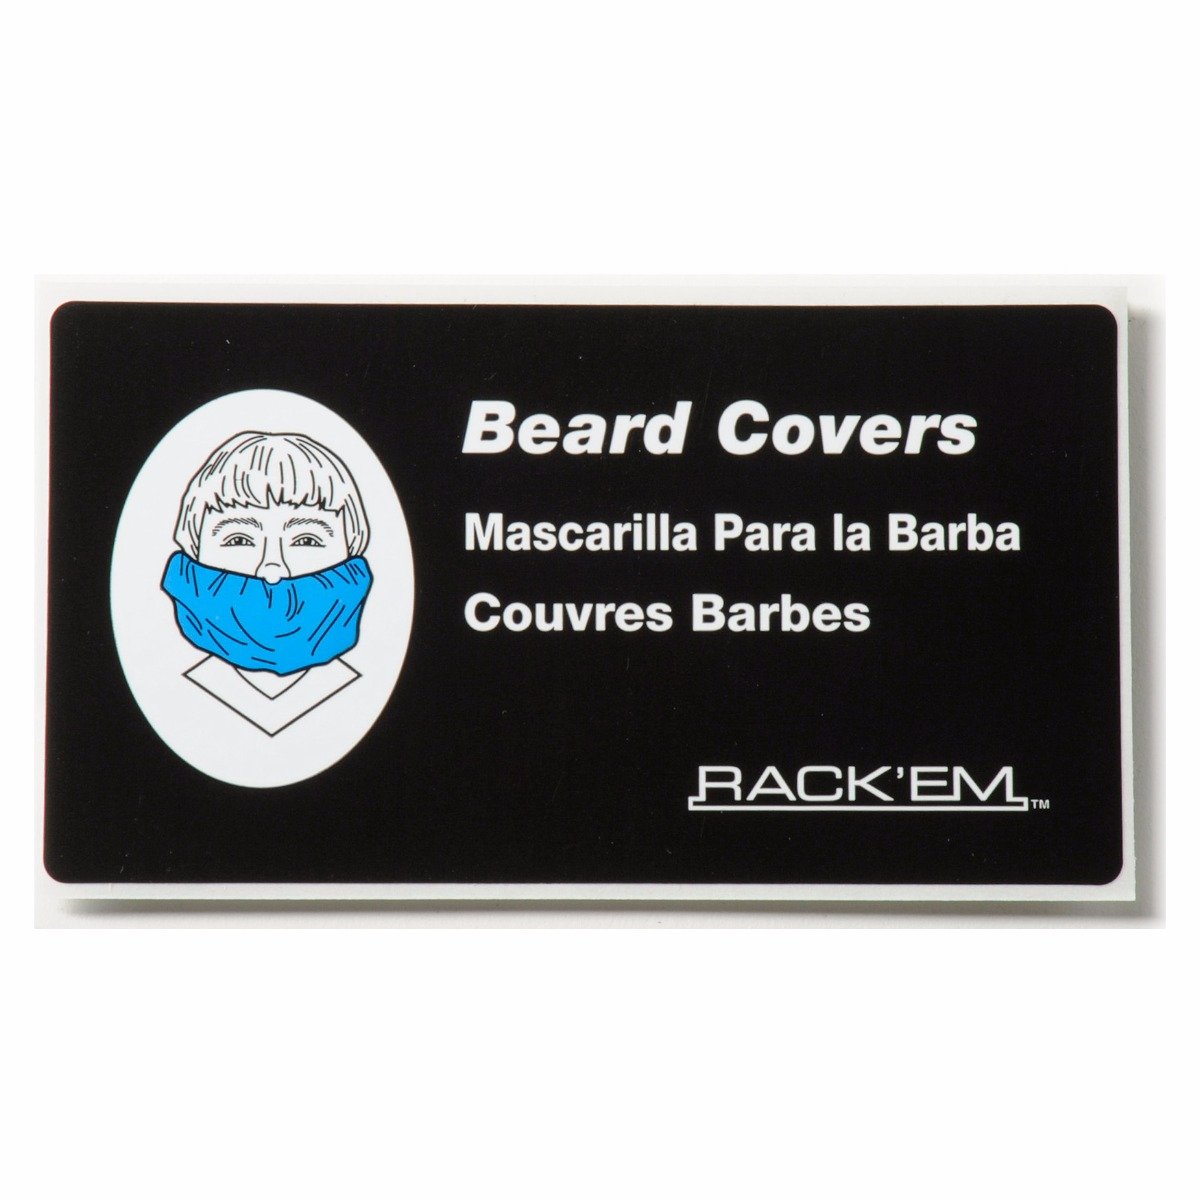 Hair Net/Beard Cover Dispenser Rack